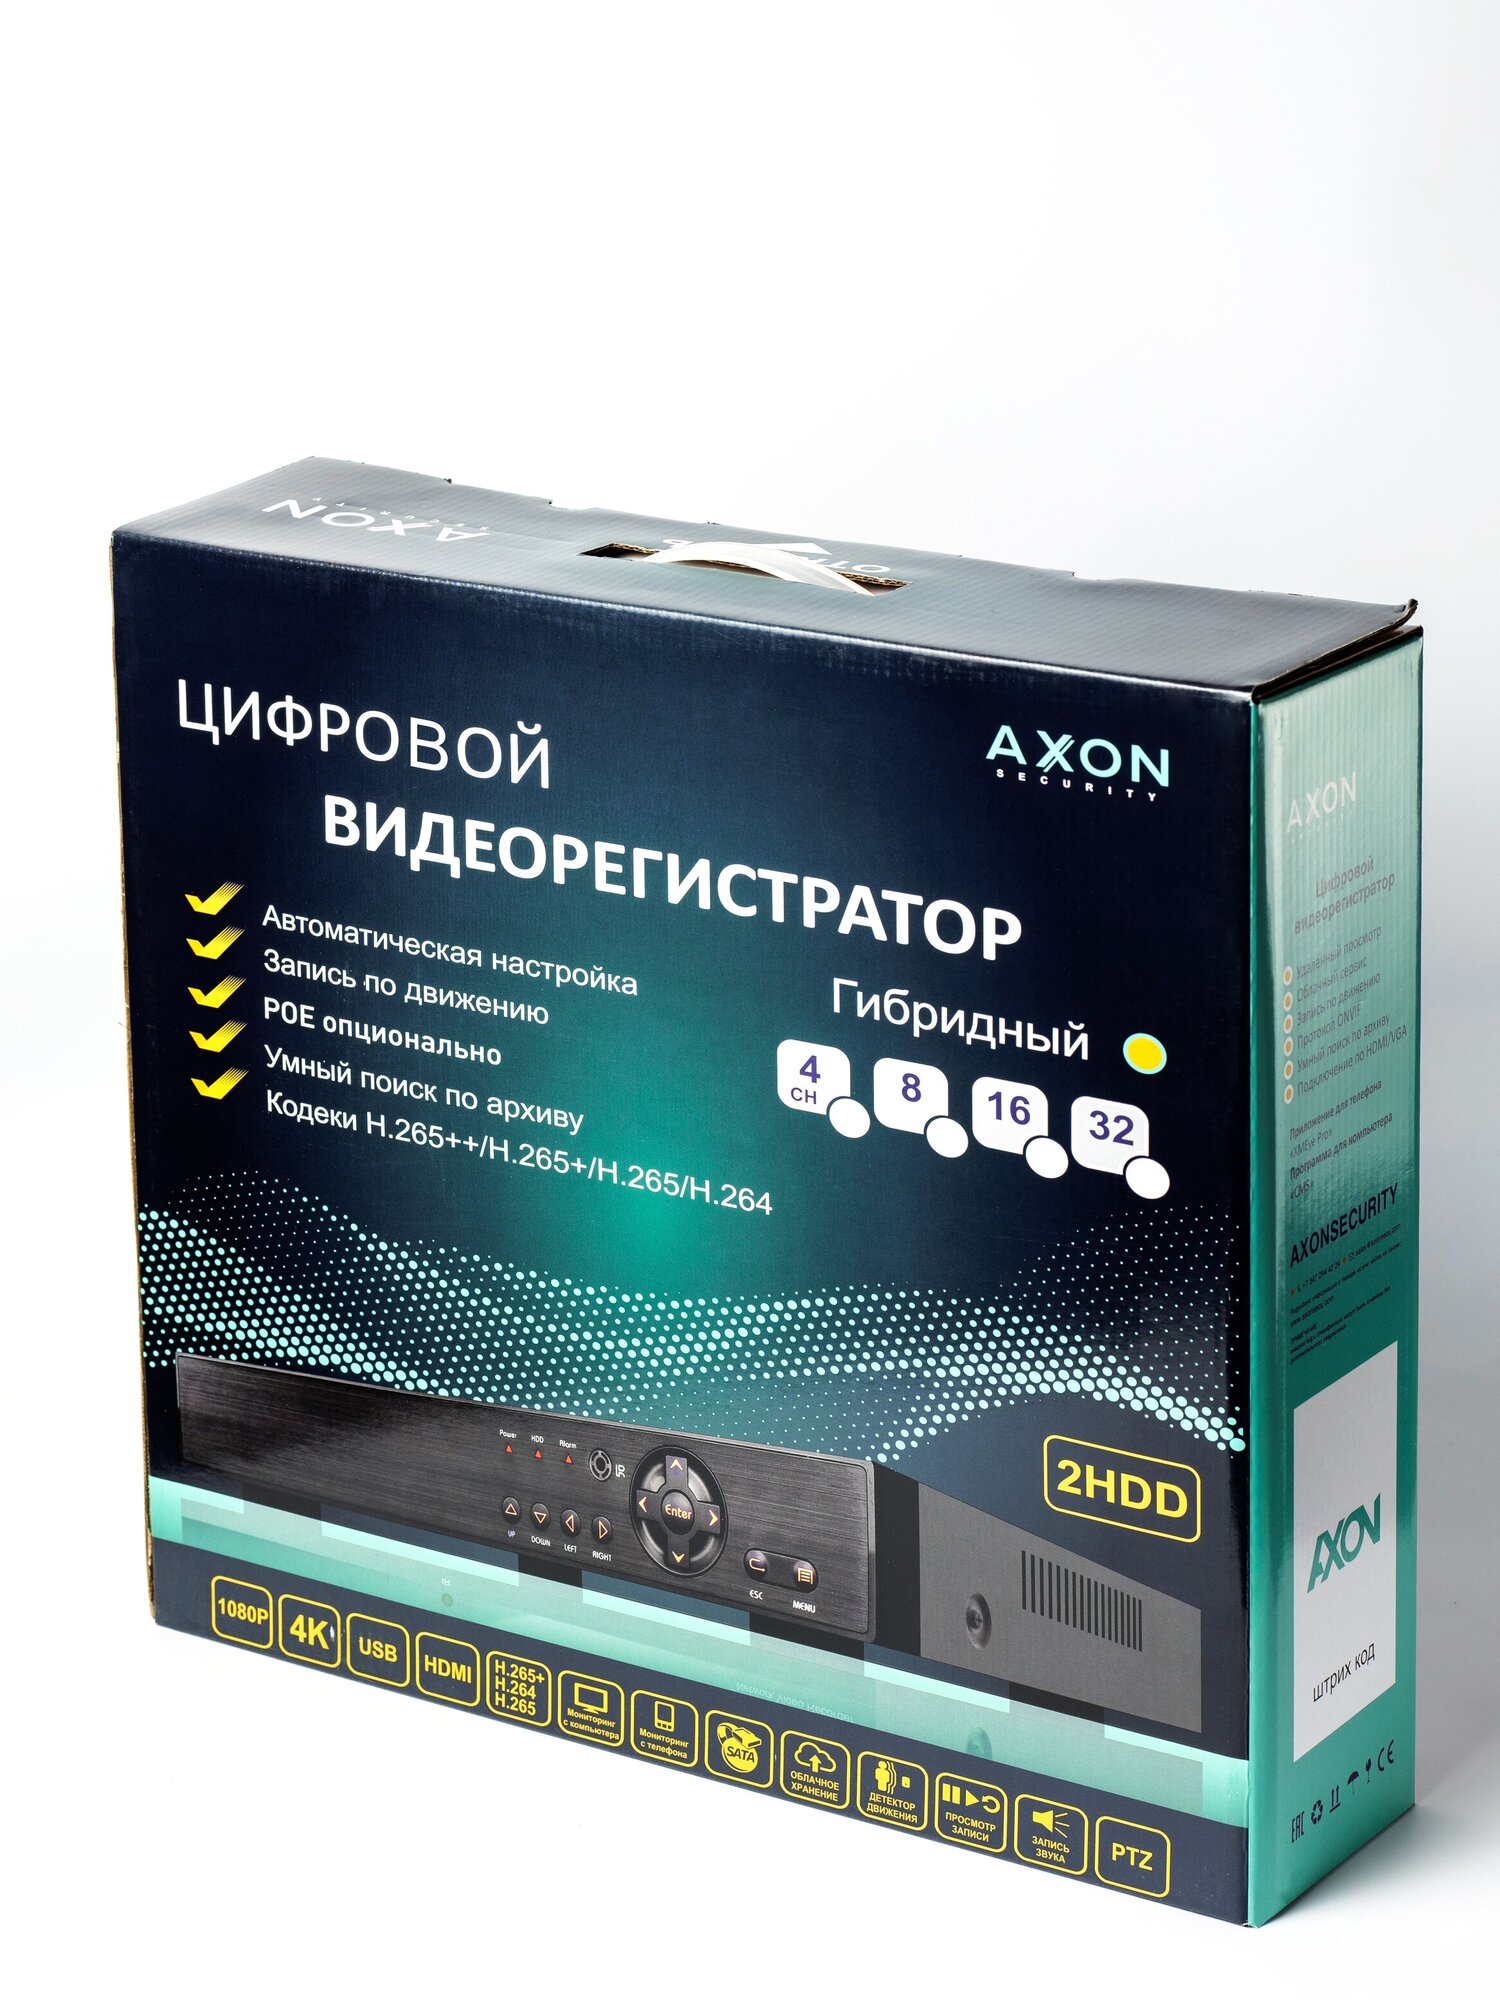 Видеорегистратор Axon A-16H2a5N (гибридный 16 каналов с поддержкой 5Мп камер облако XMeye)